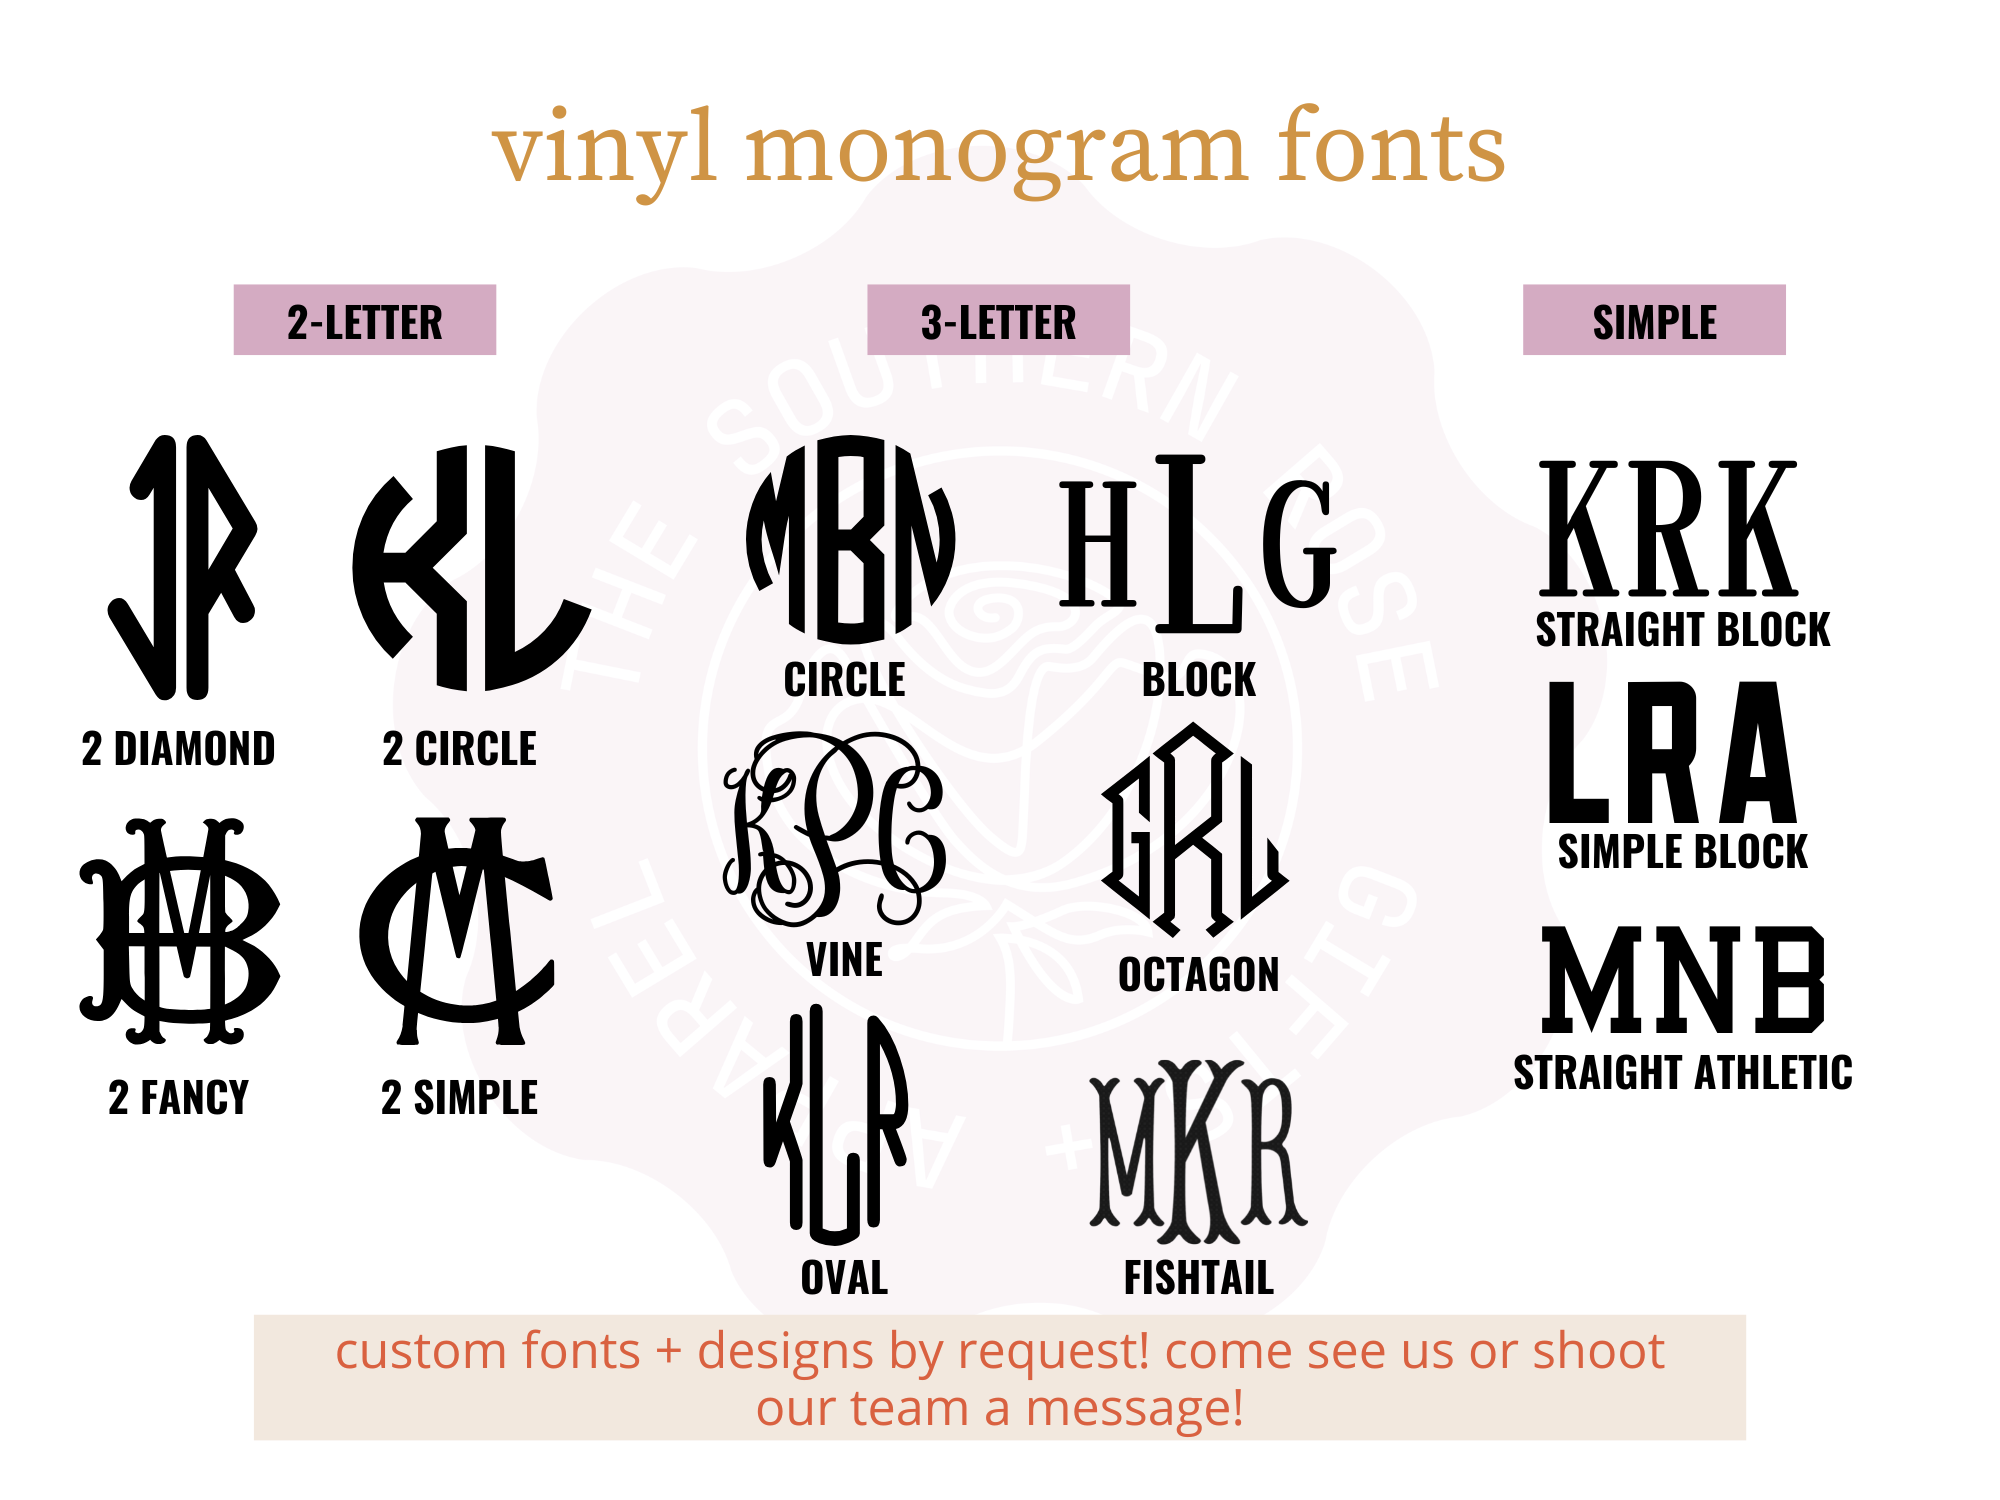 https://cdn11.bigcommerce.com/s-qiszfjgfwj/images/stencil/original/products/3684/15229/tsr2-vinyl-monogram-fonts__27805.1677003065.png?c=2